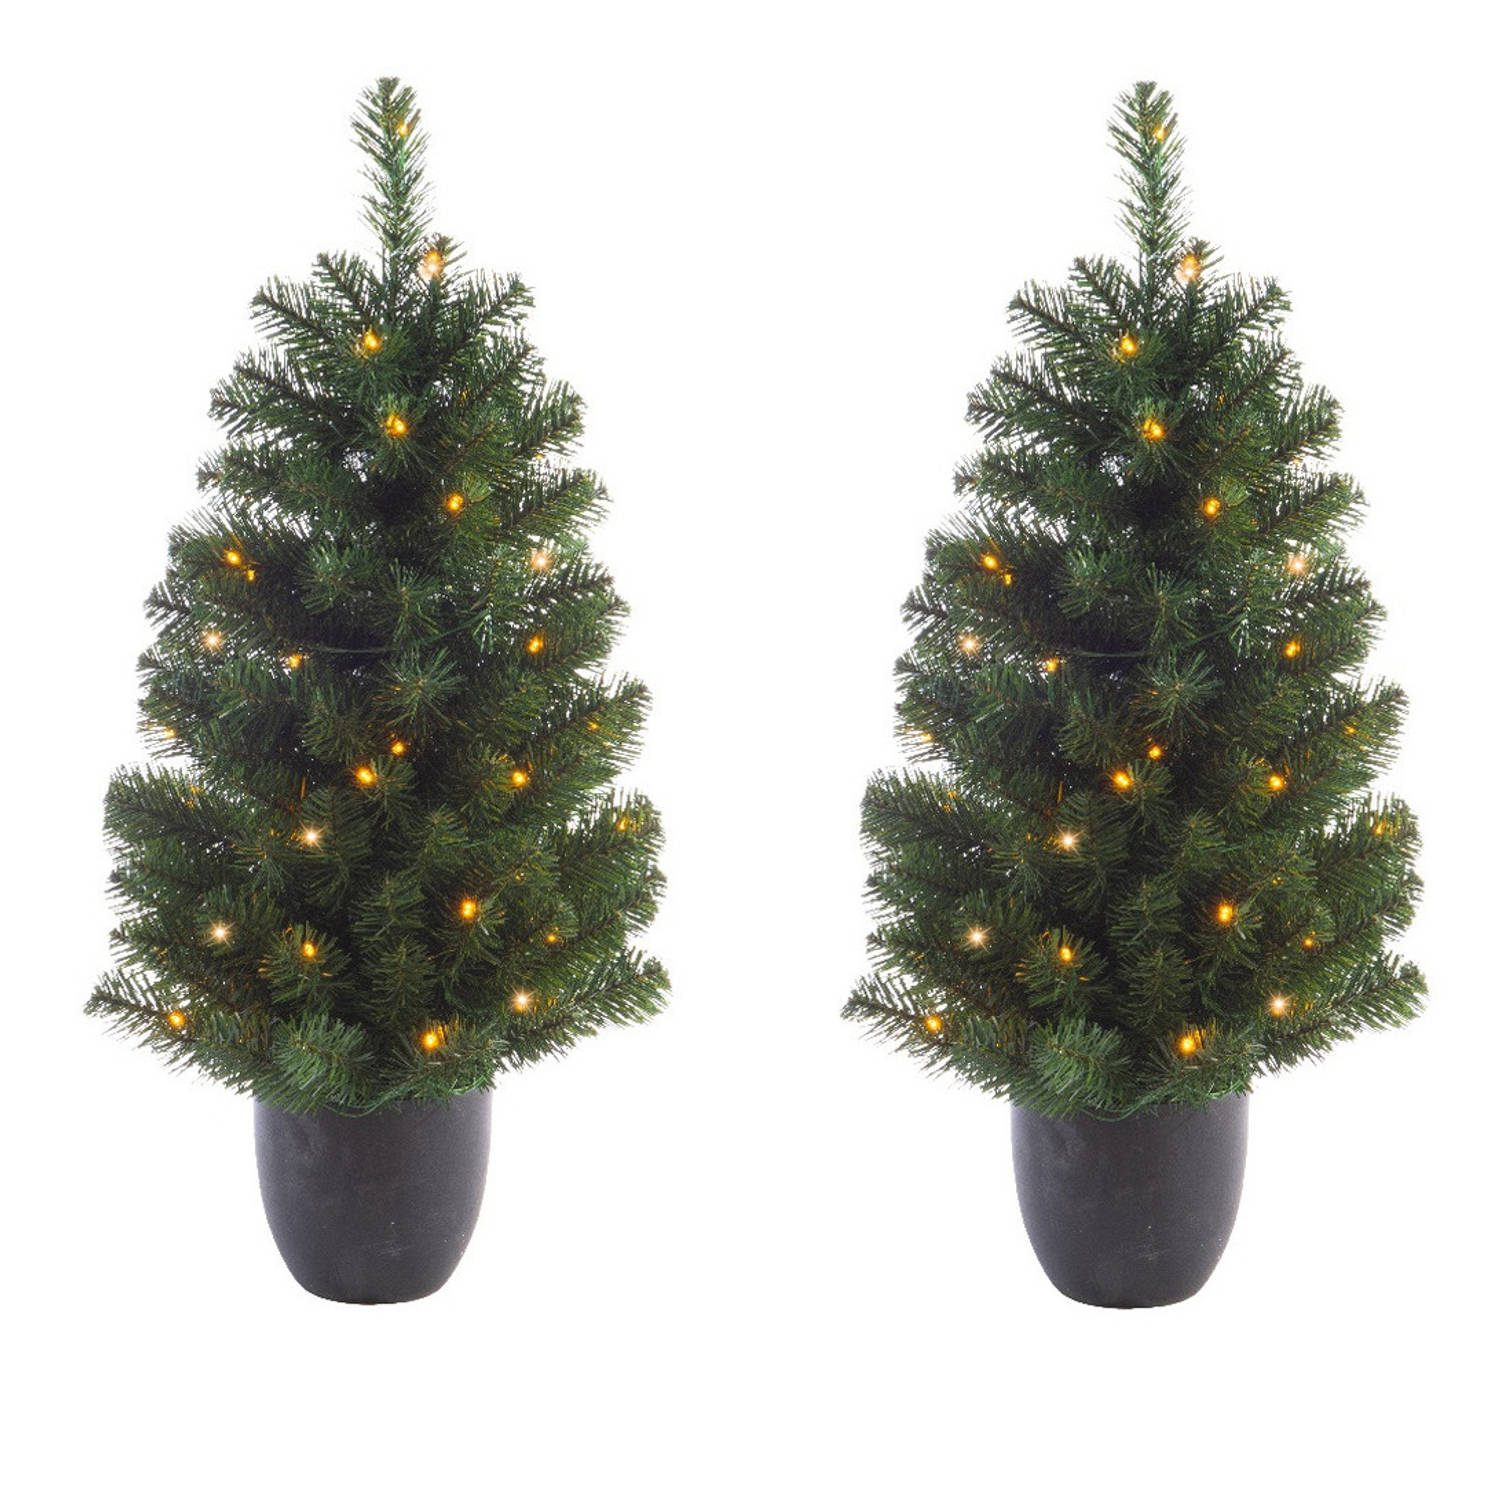 Entertainment Koningin druk 2x stuks kunstbomen/kunst kerstbomen met verlichting 90 cm - Kunstkerstboom  | Blokker